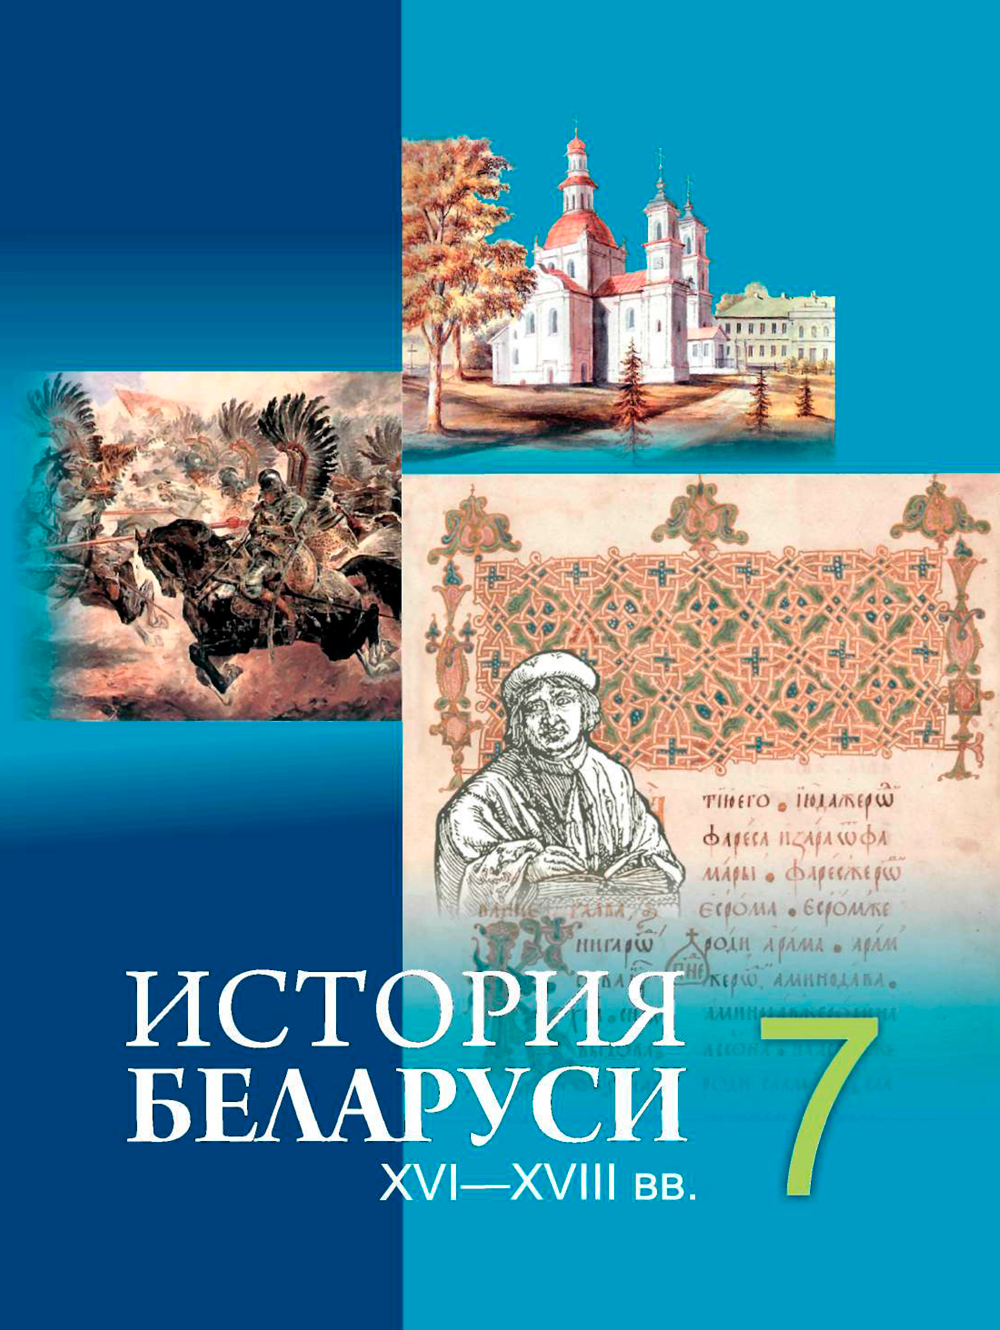 Проект по истории беларуси